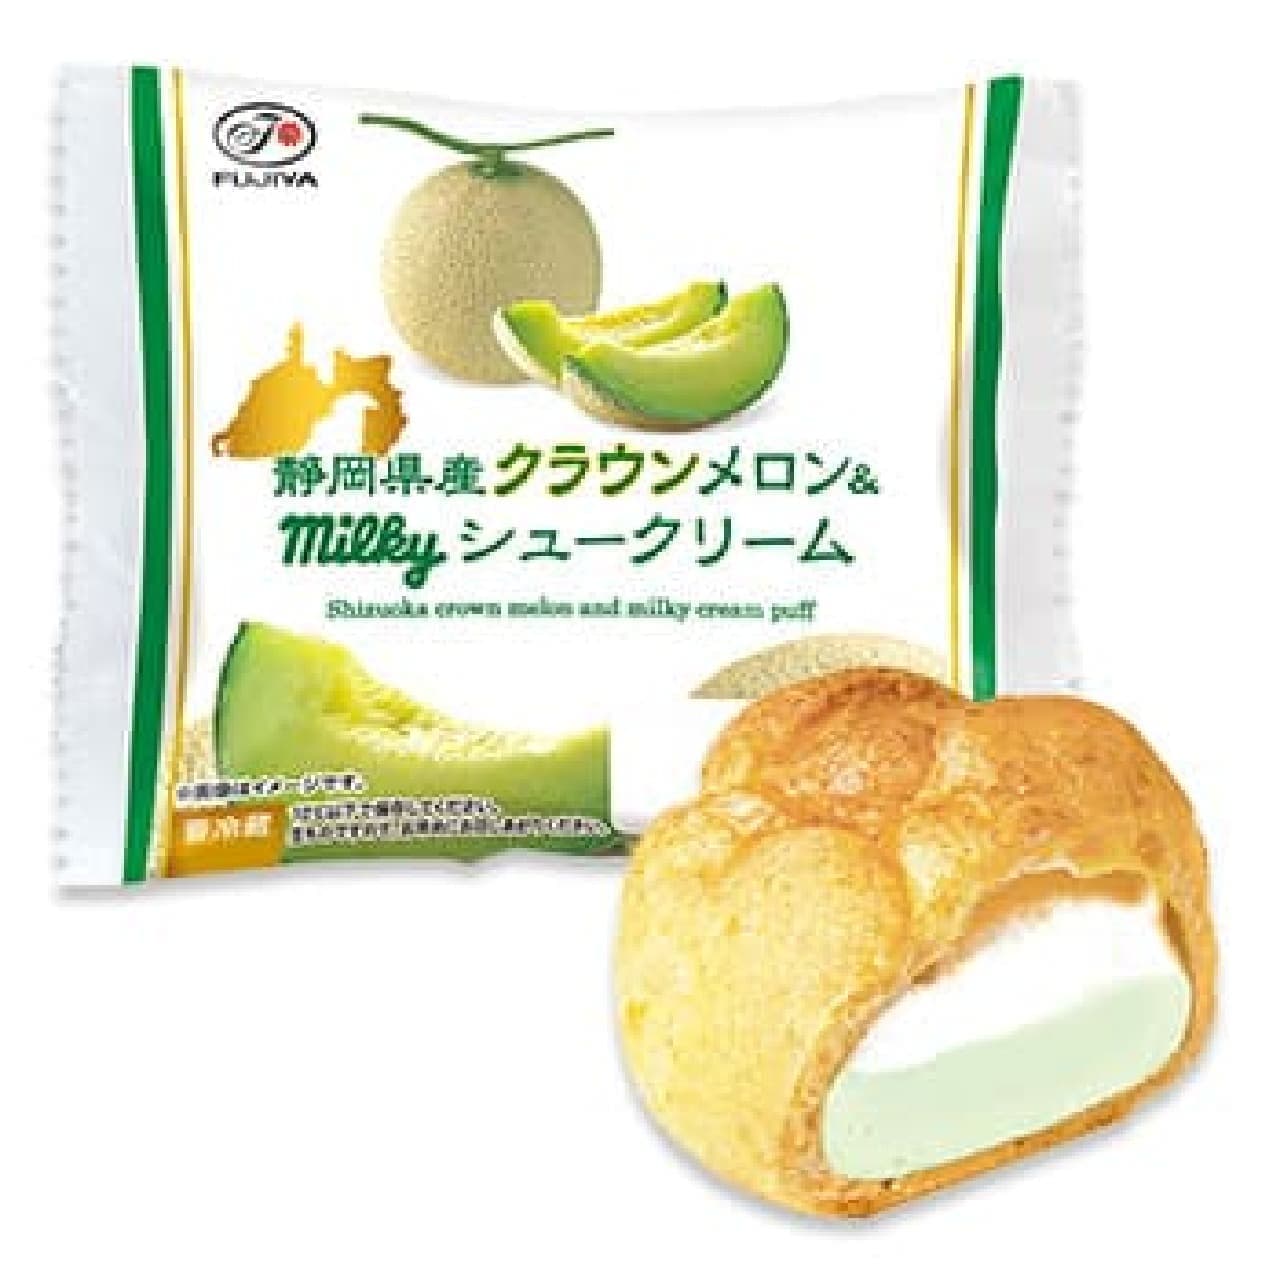 Fujiya "Shizuoka Crown Melon & Milky Cream Puff".